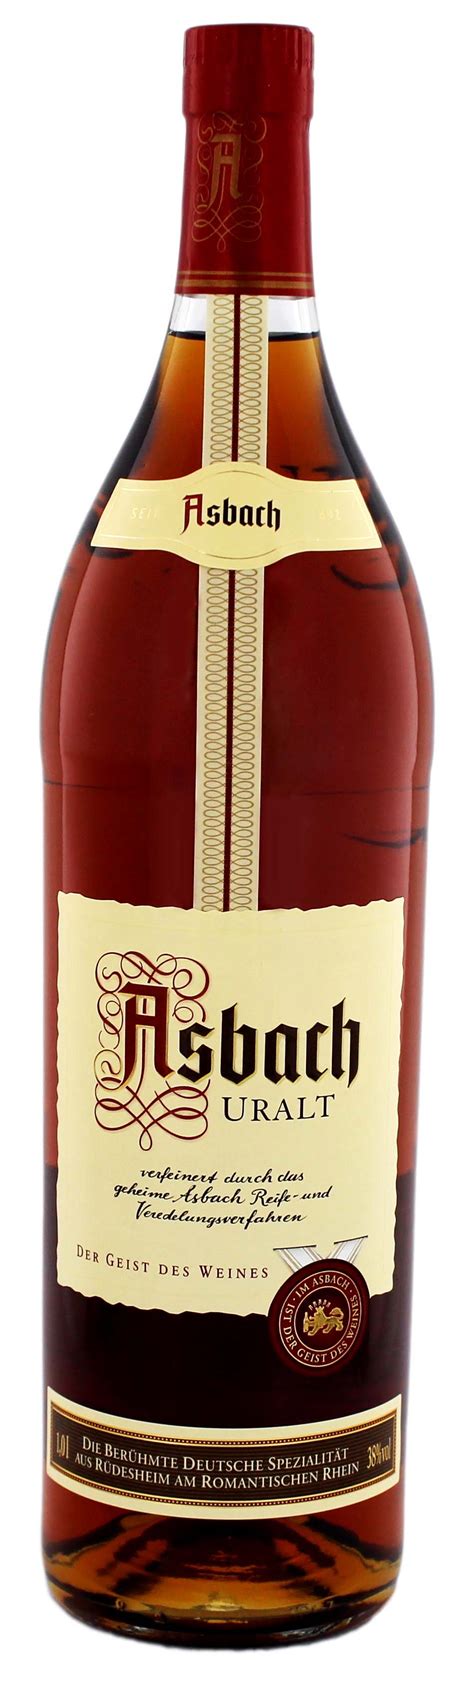 asbach uralt weinbrand jetzt kaufen brandy  shop spirituosen